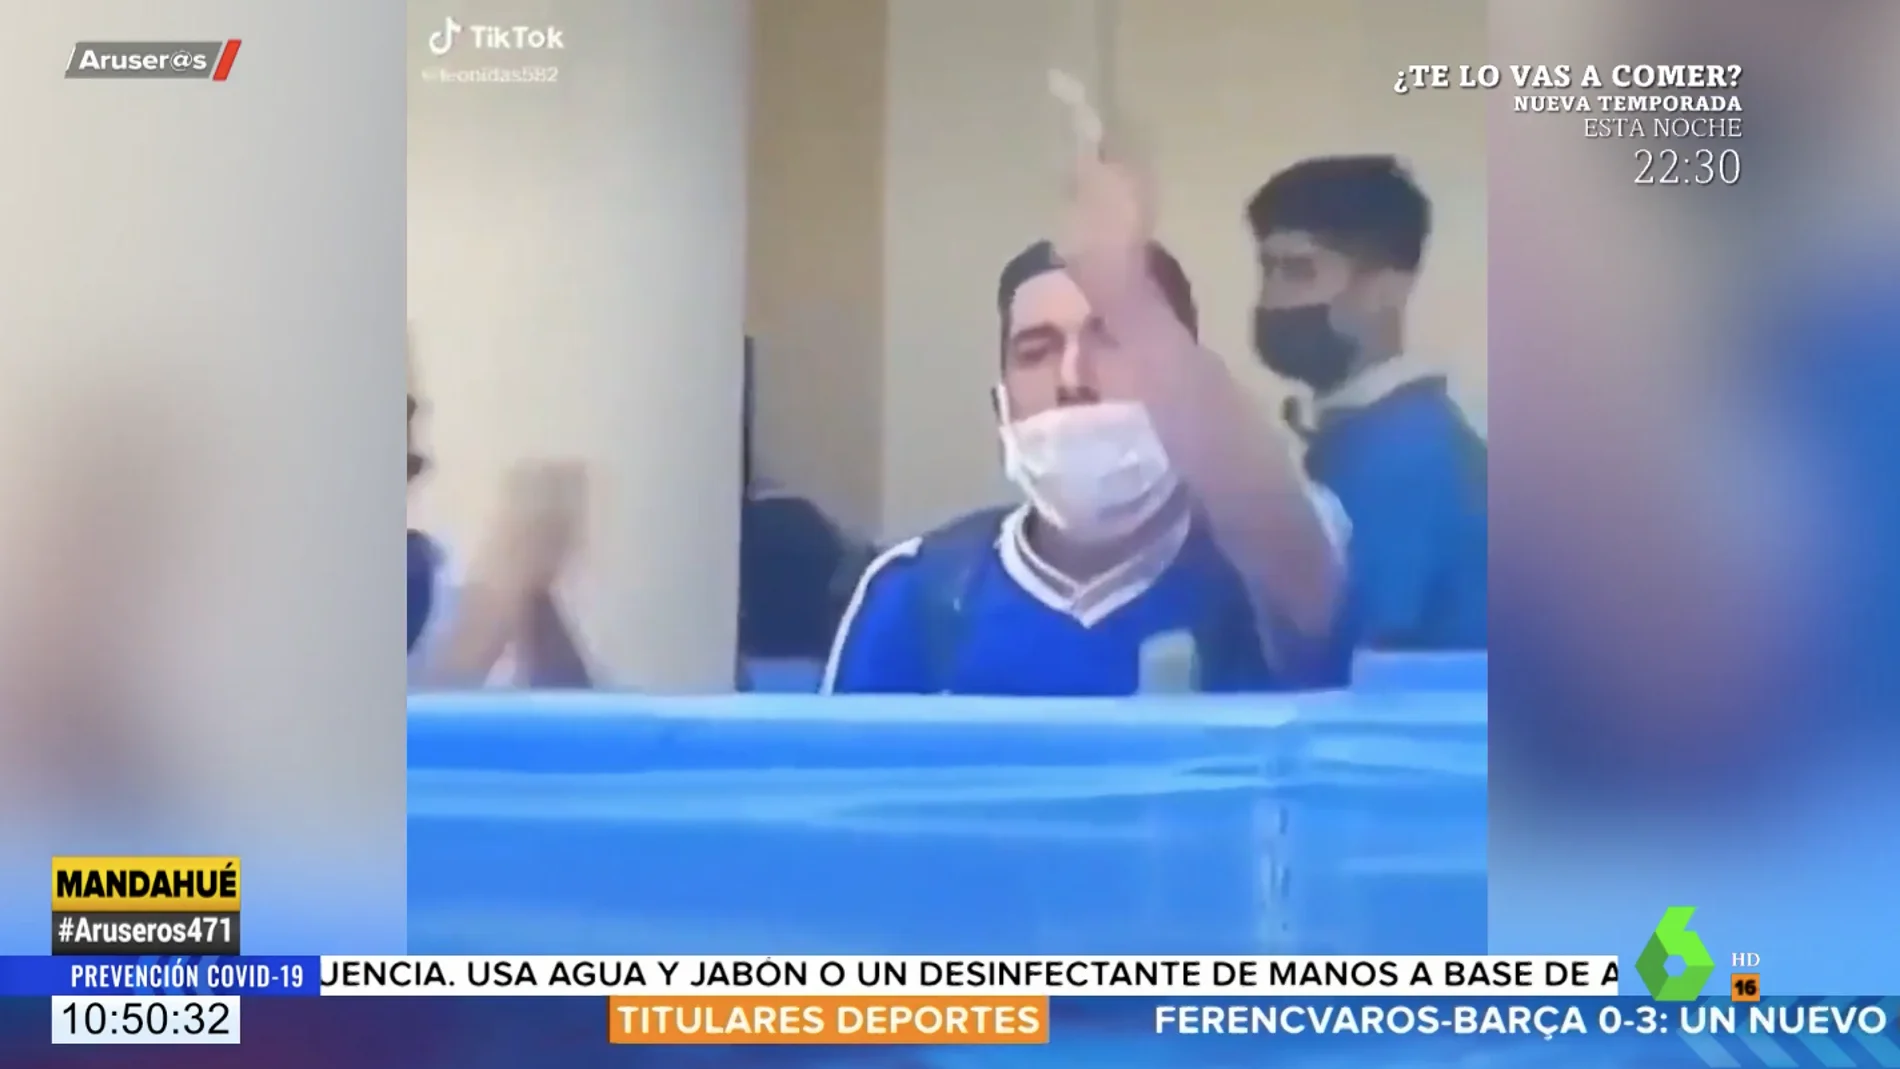 Un joven lanza al féretro de Maradona una bolsita con un sospechoso polvo blanco